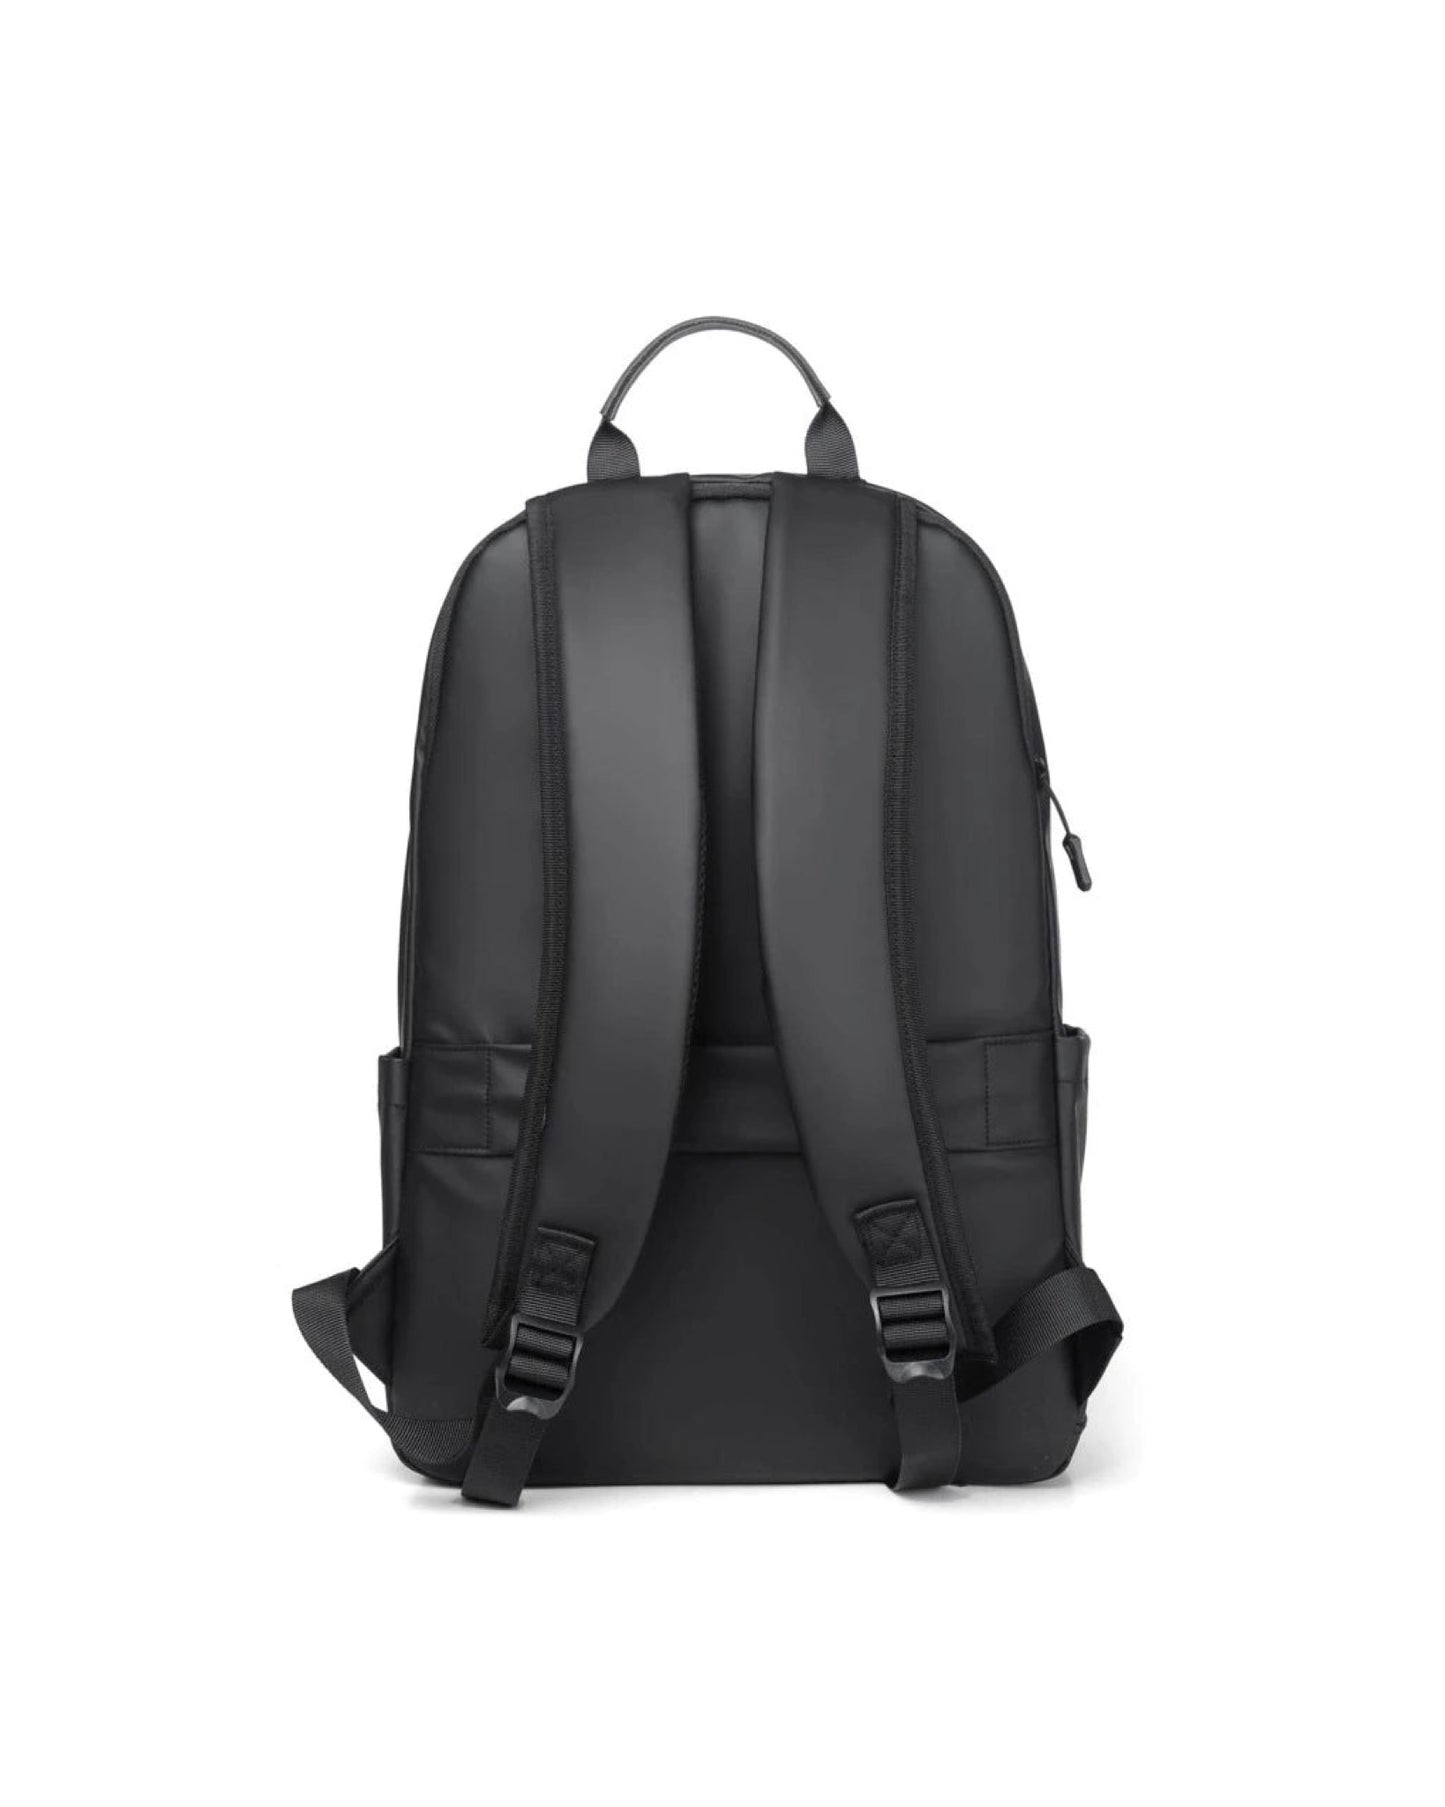 Faux Leather backpack bag in black – Garmisland